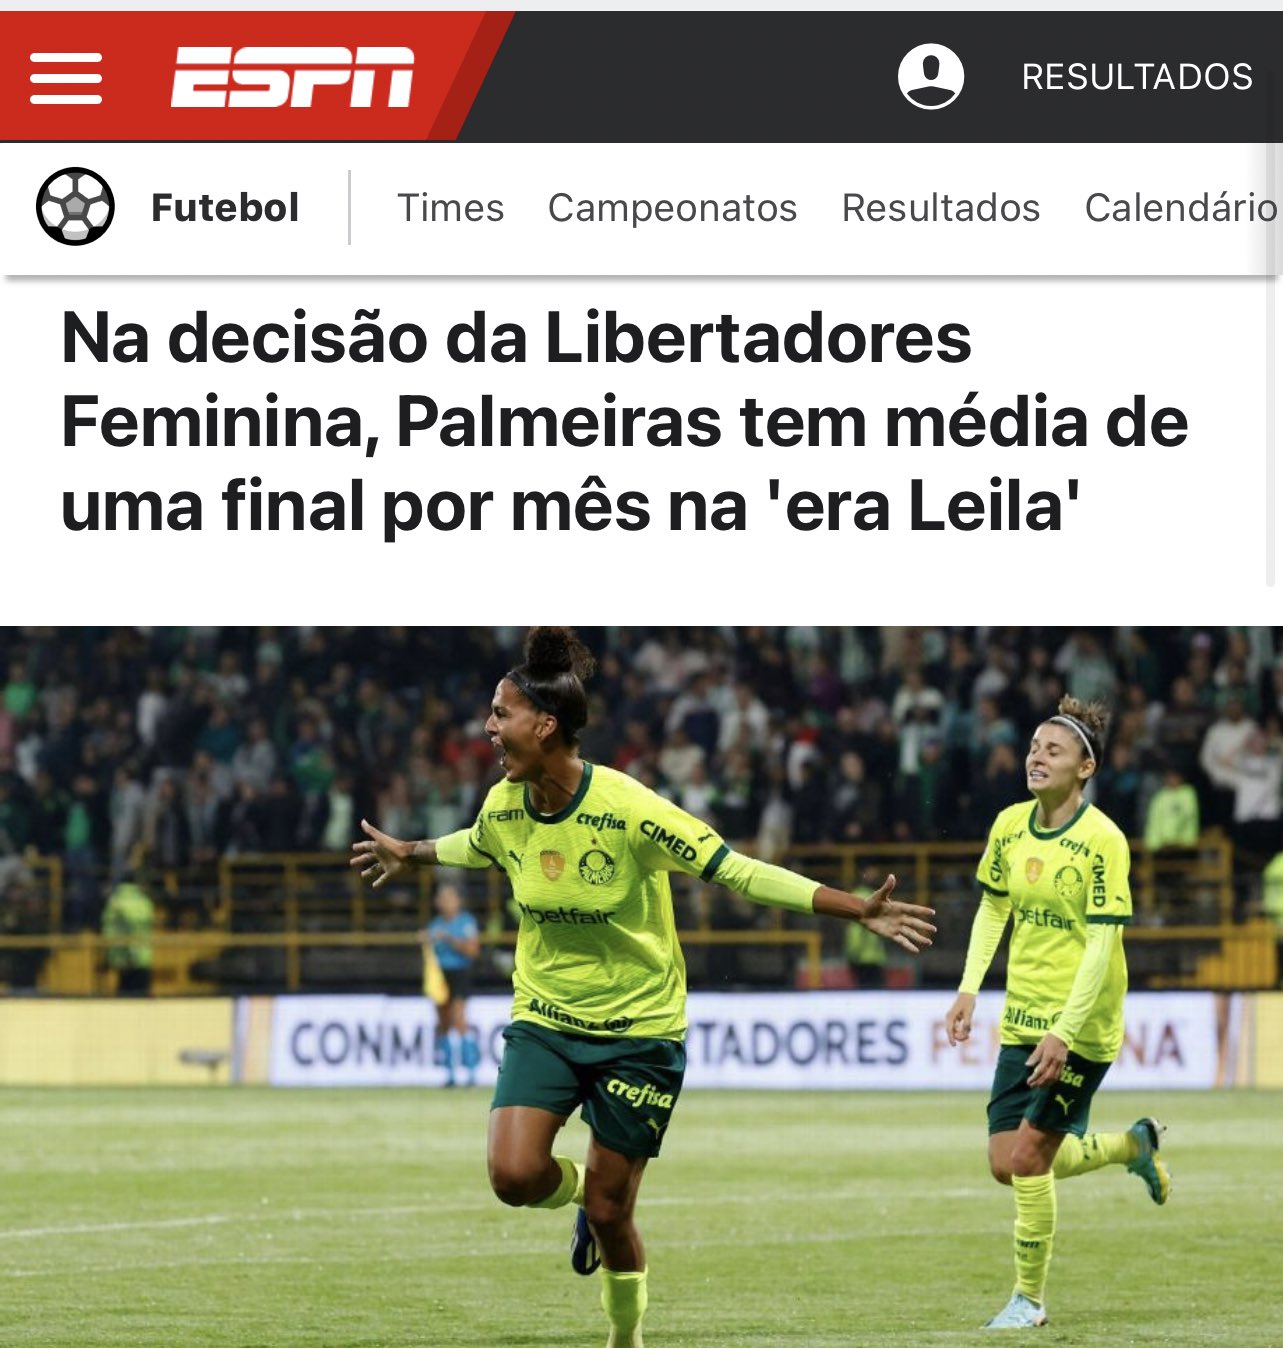 Calendário do Palmeiras 2023 - ESPN (BR)